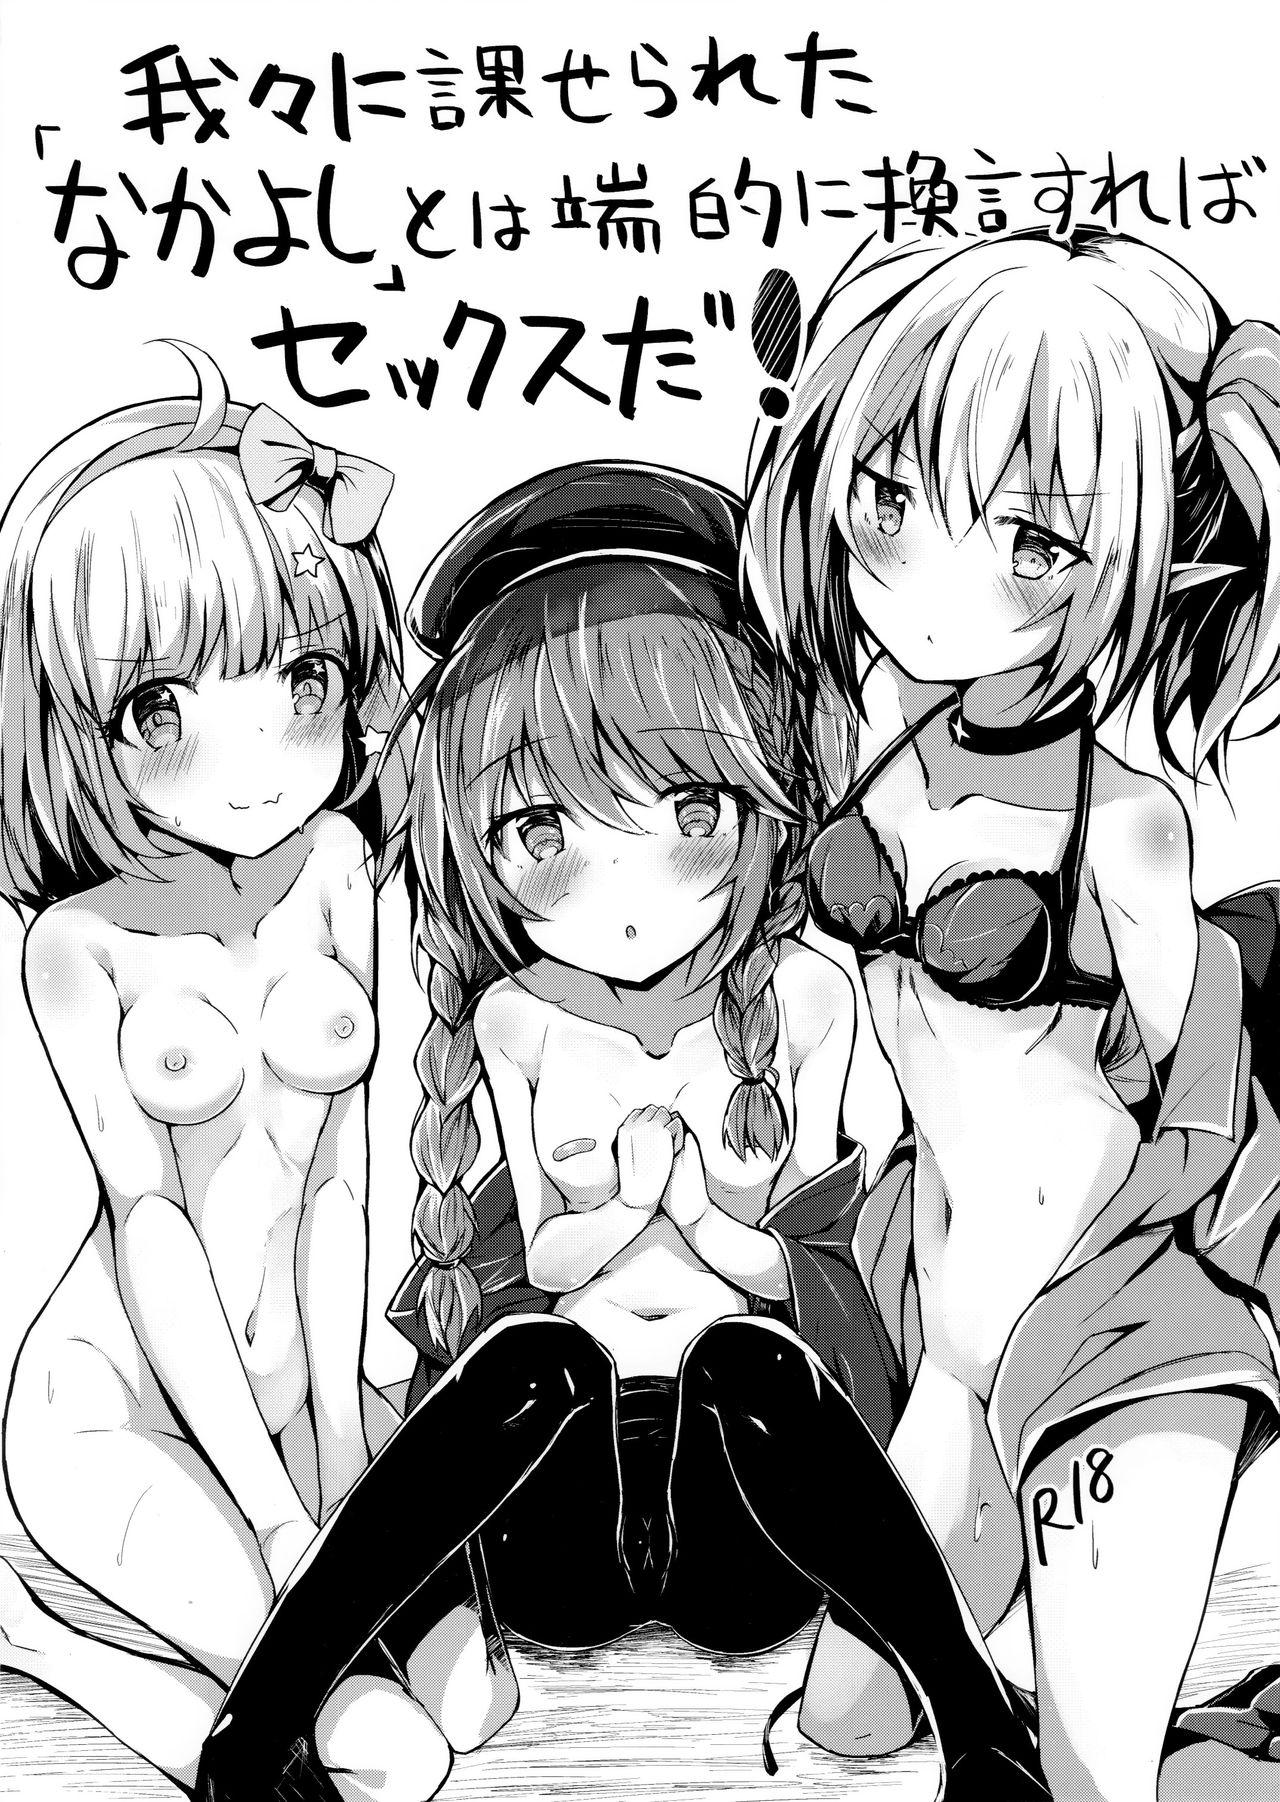 Orgy Wareware ni Kaserareta "Nakayoshi" to wa Tanteki ni Kangen Sureba Sex da! - Princess connect Gaygroup - Picture 1